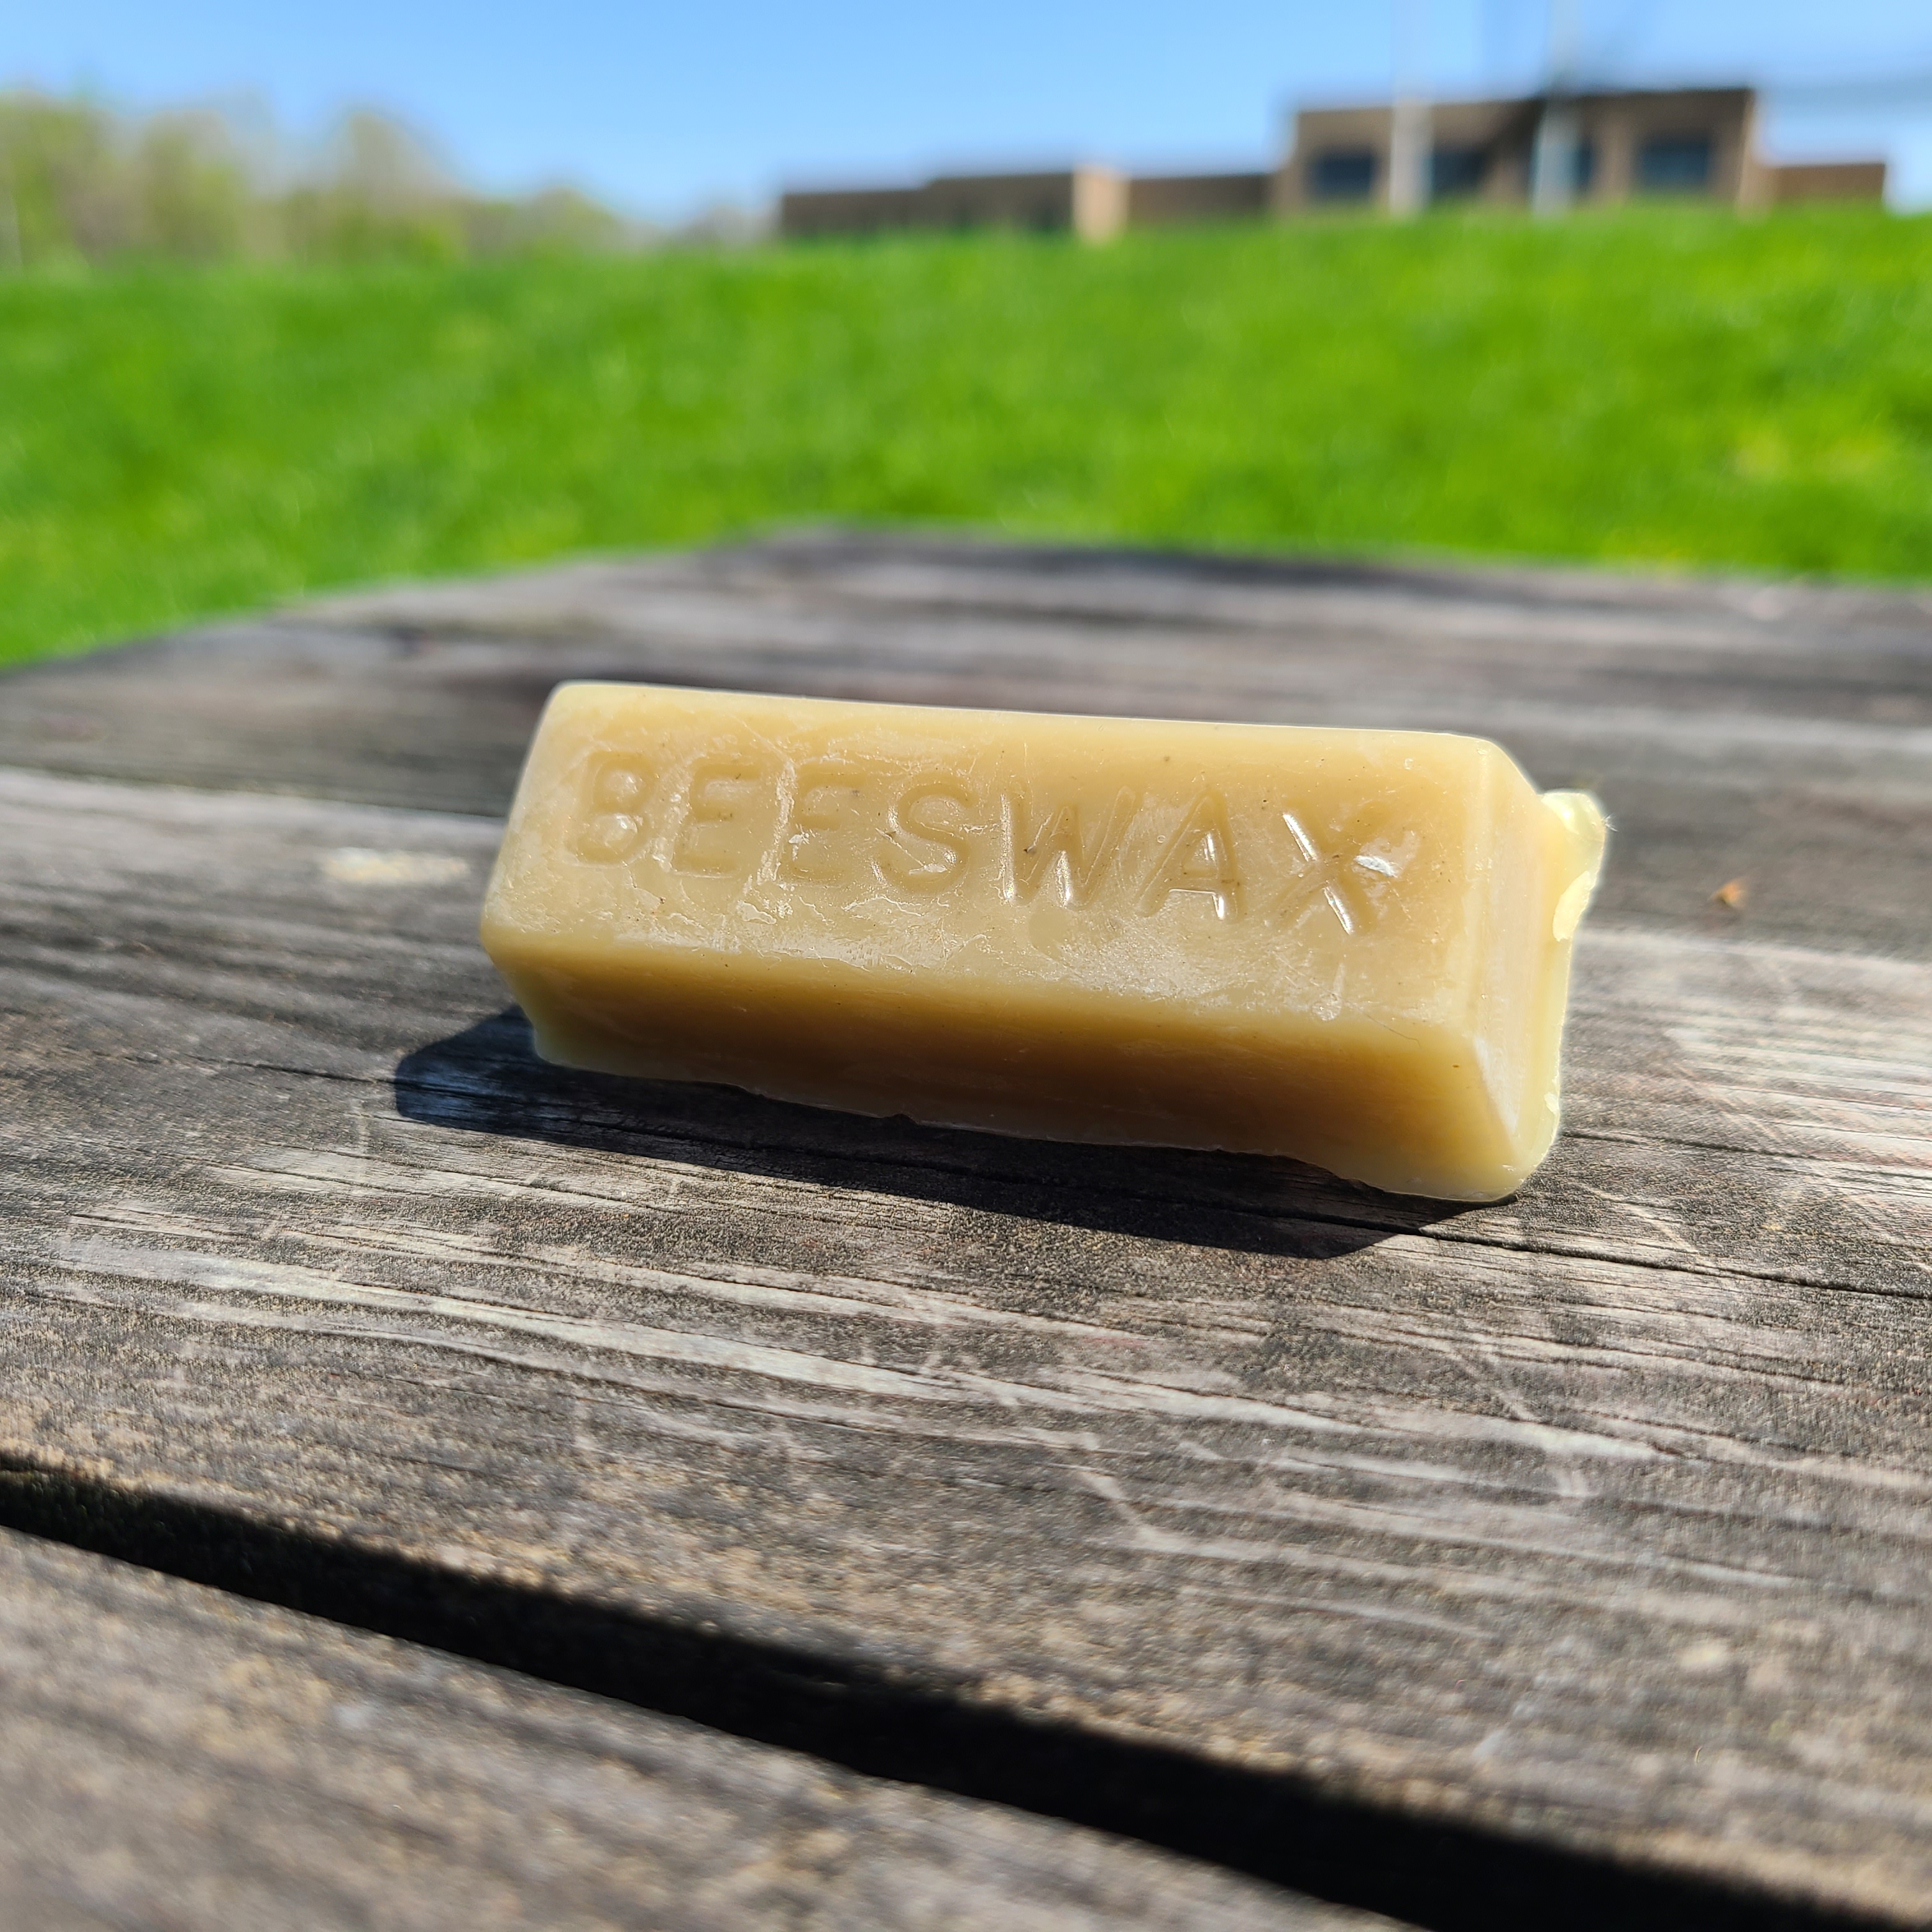 Beeswax Bar - 1 oz.